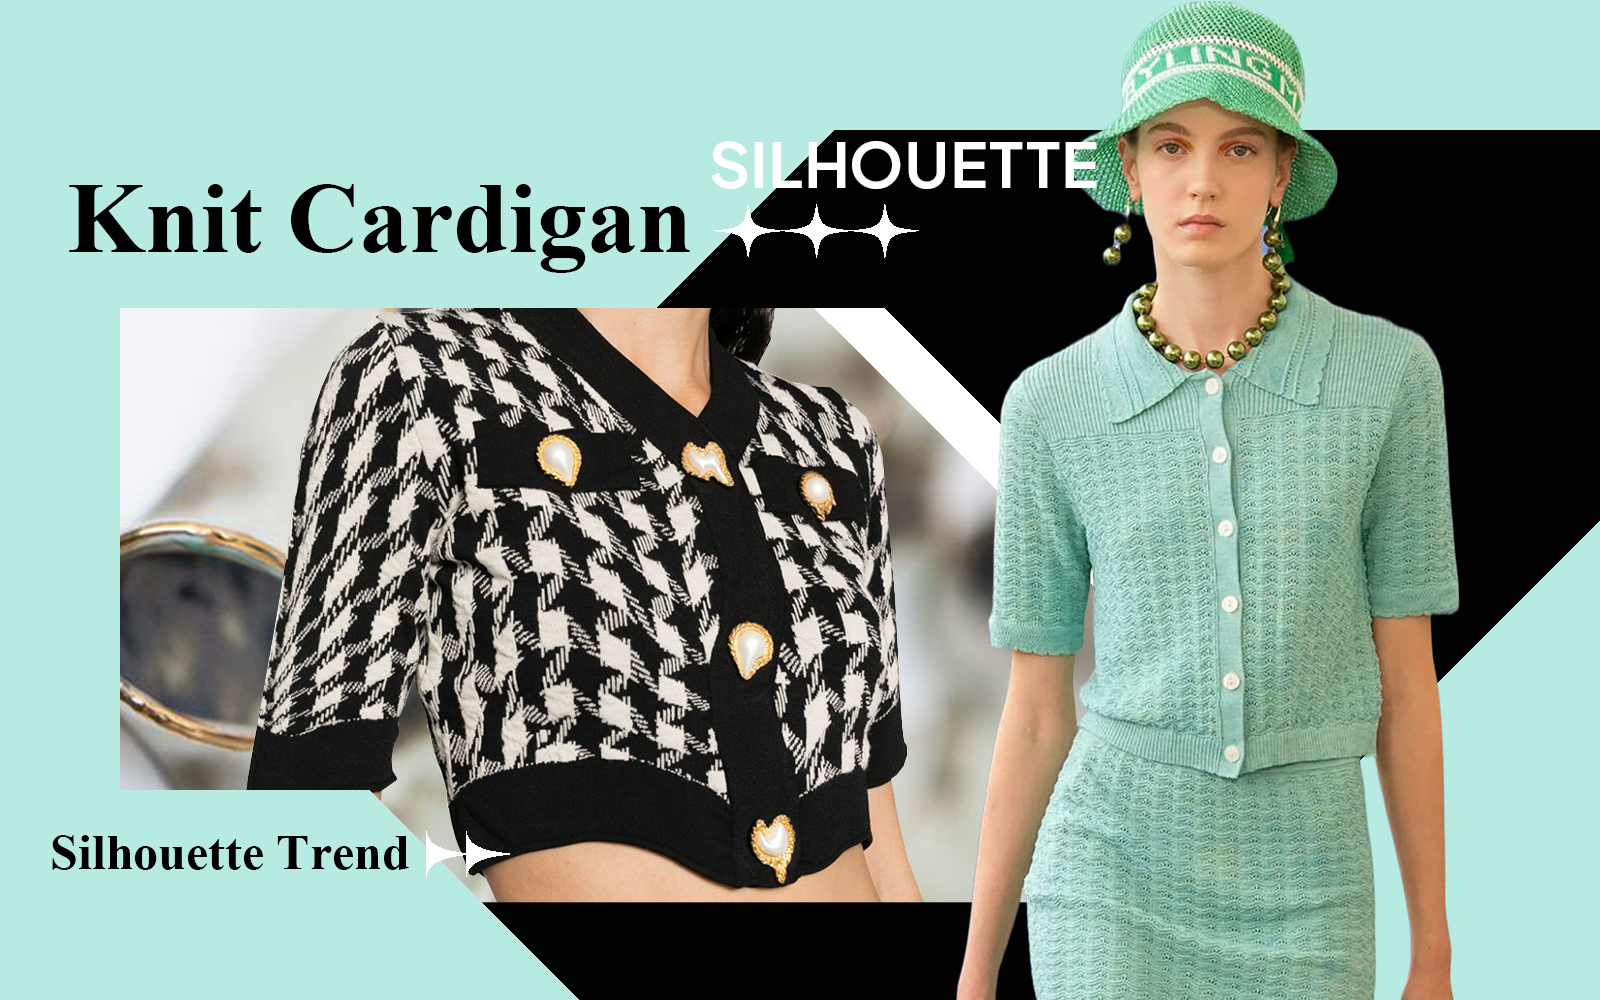 Cardigan -- S/S 2025 Silhouette Trend for Women's Knitwear